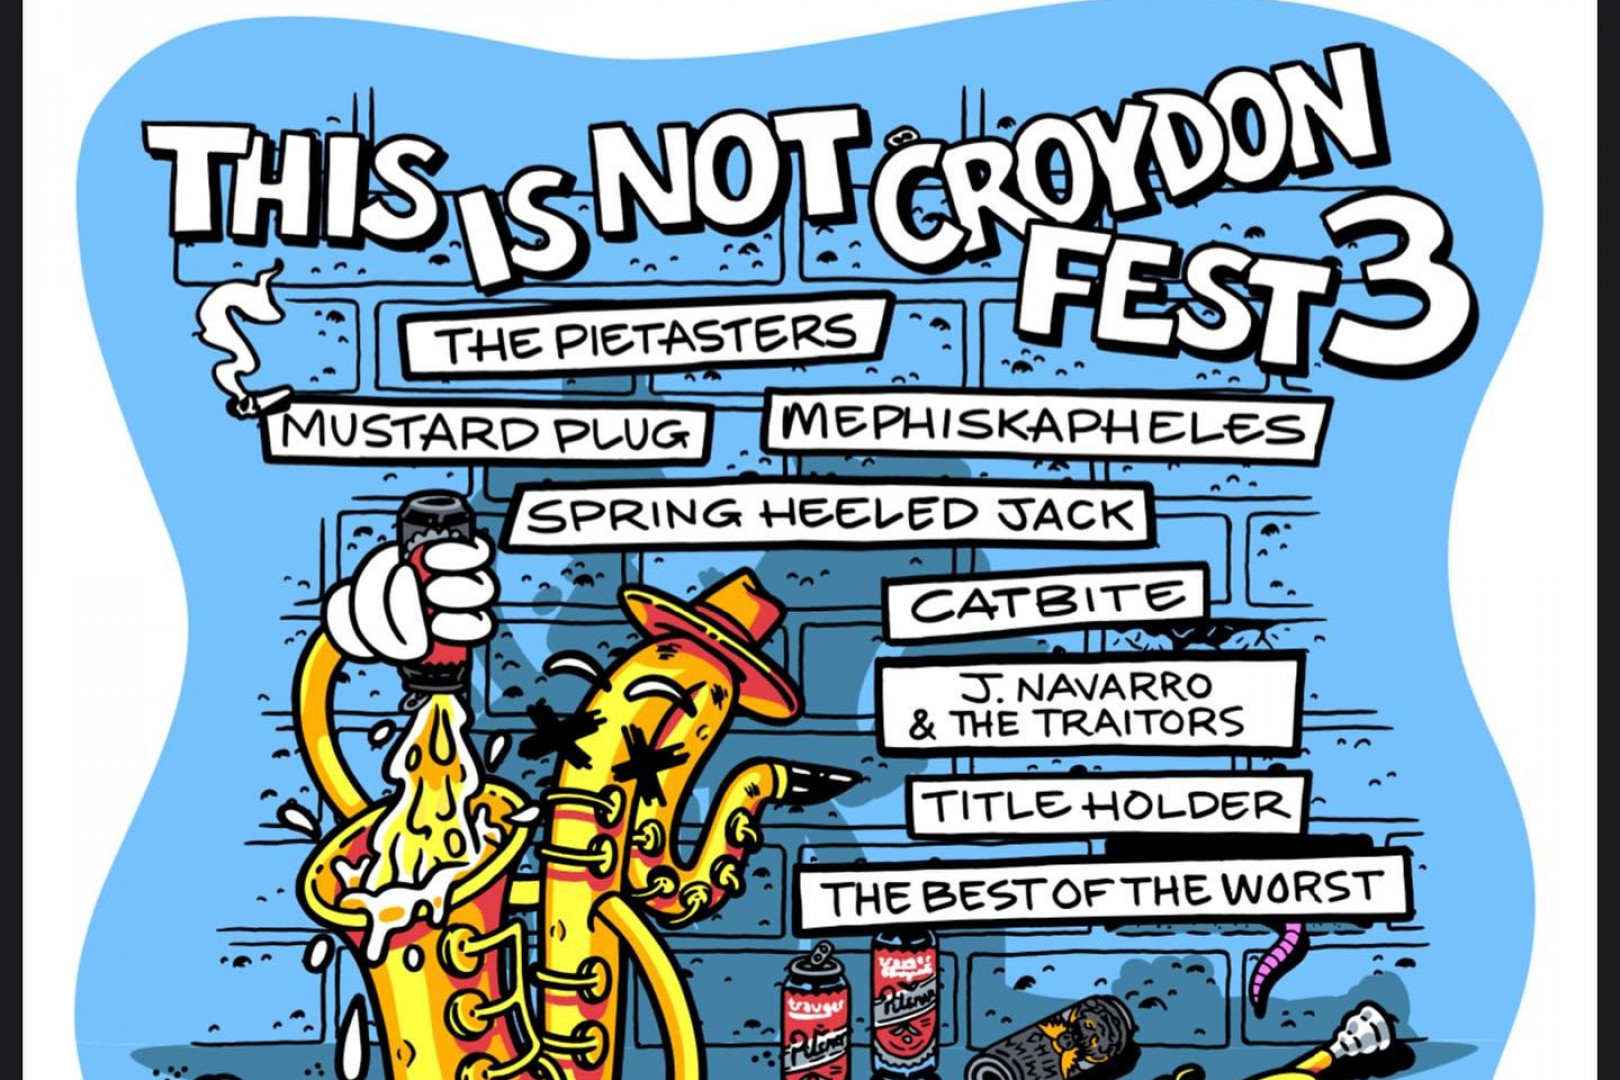 Pietasters, Mustard Plug, Mephiskapheles to headline 'This is not Croydon Fest 3'